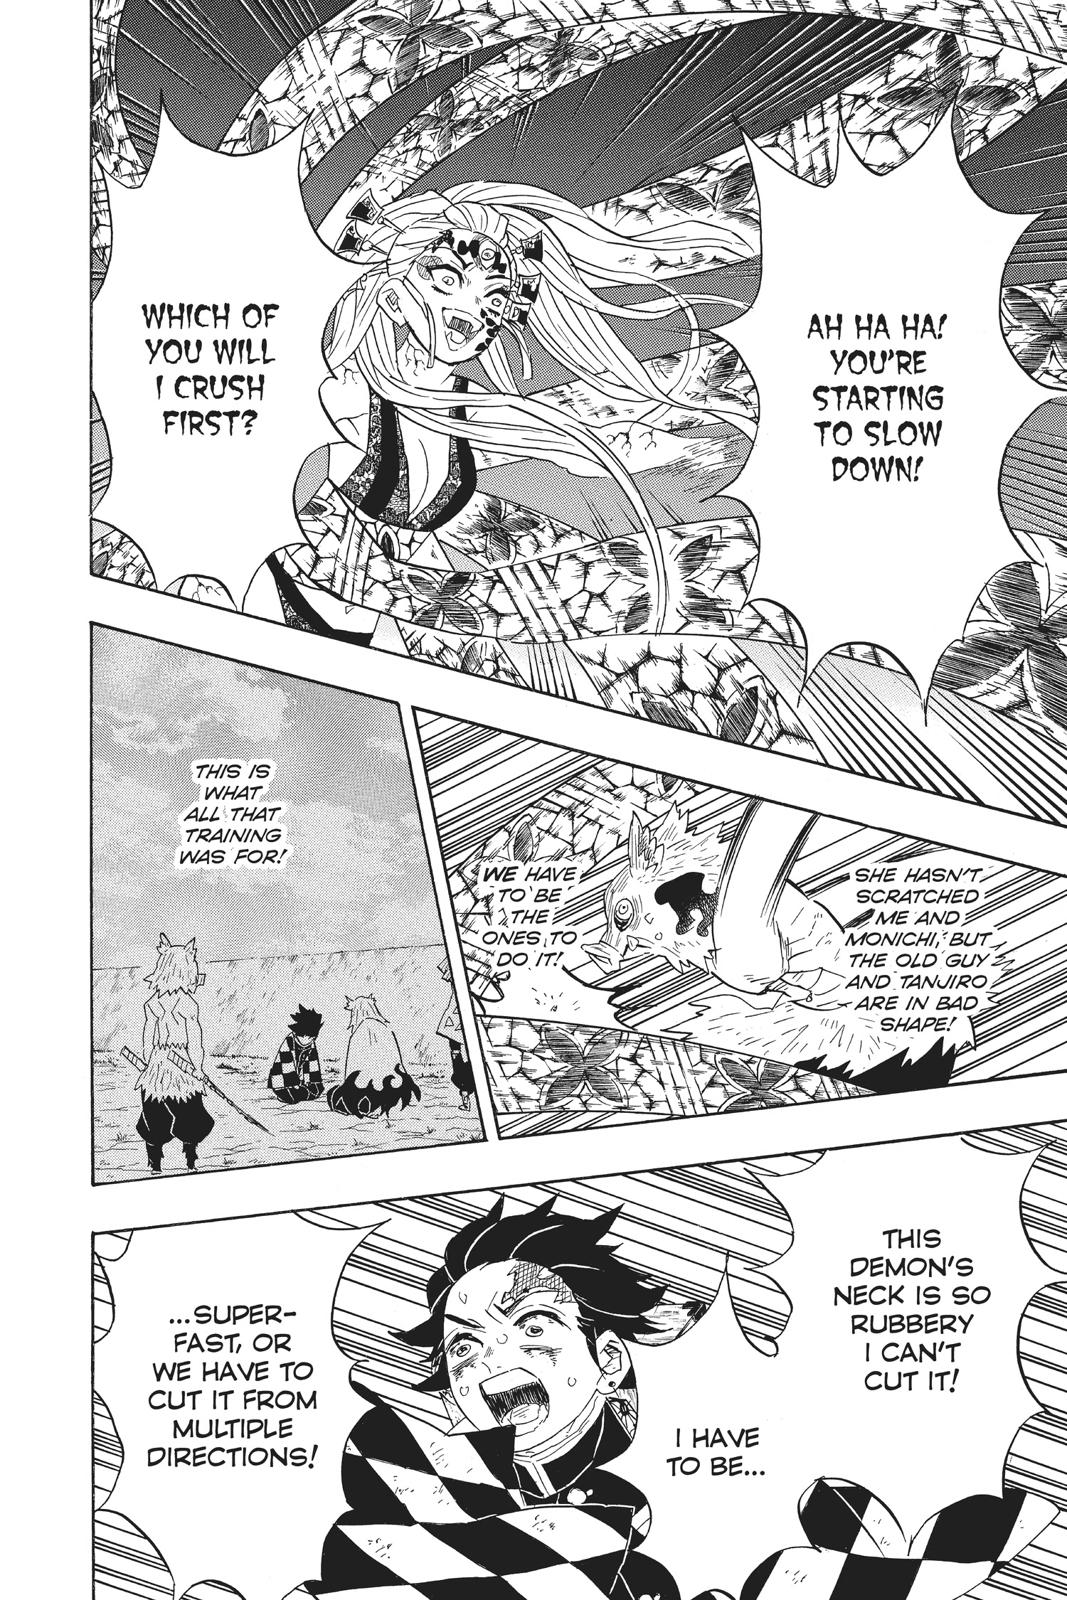 Demon Slayer Manga Manga Chapter - 91 - image 12